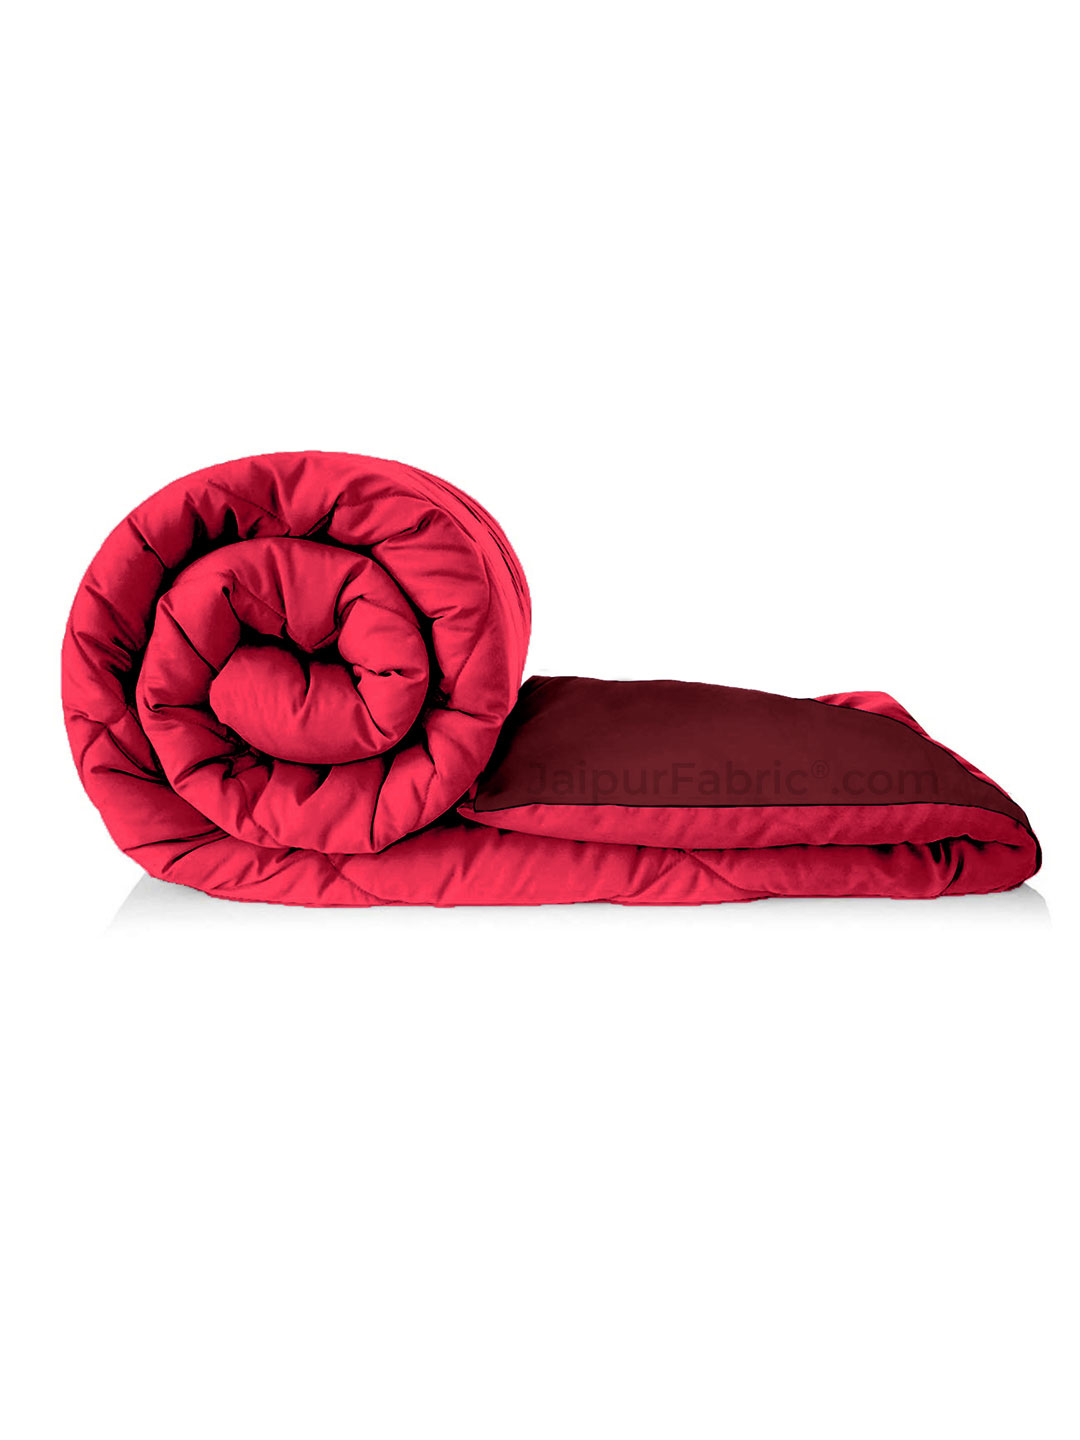 Pink-Maroon Double Bed Comforter